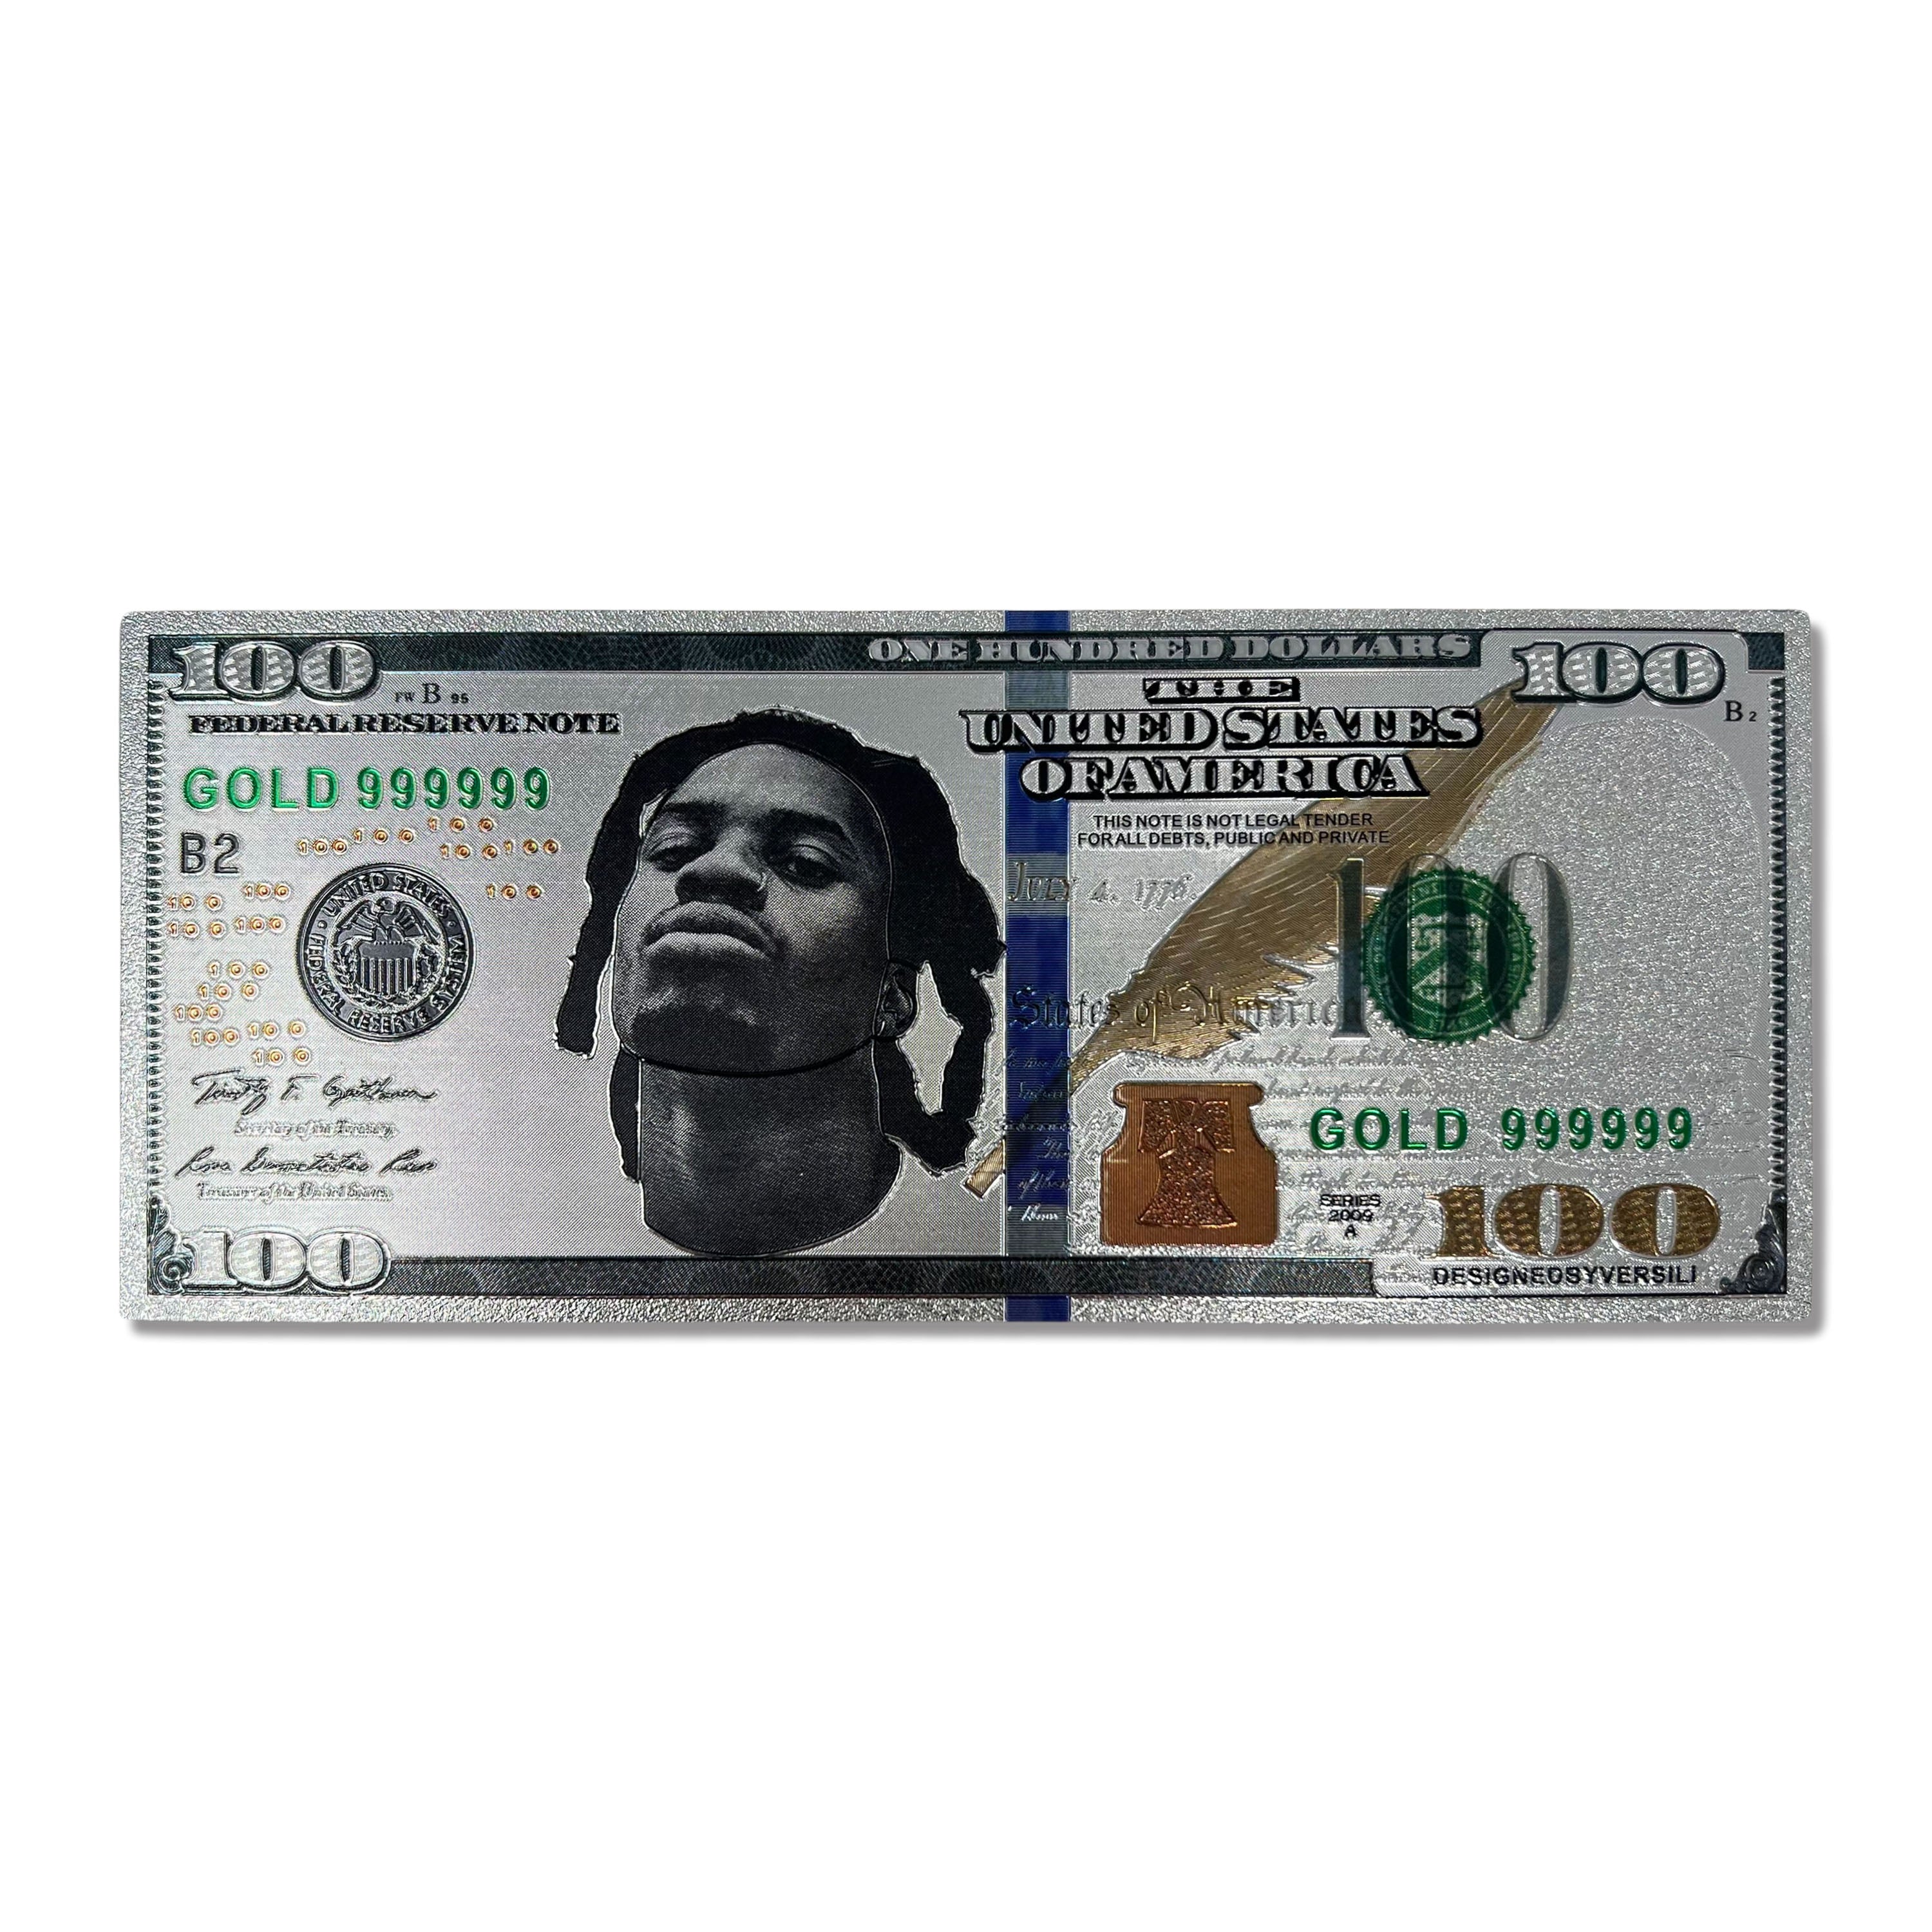 Denzel Curry Money Dollar Bill